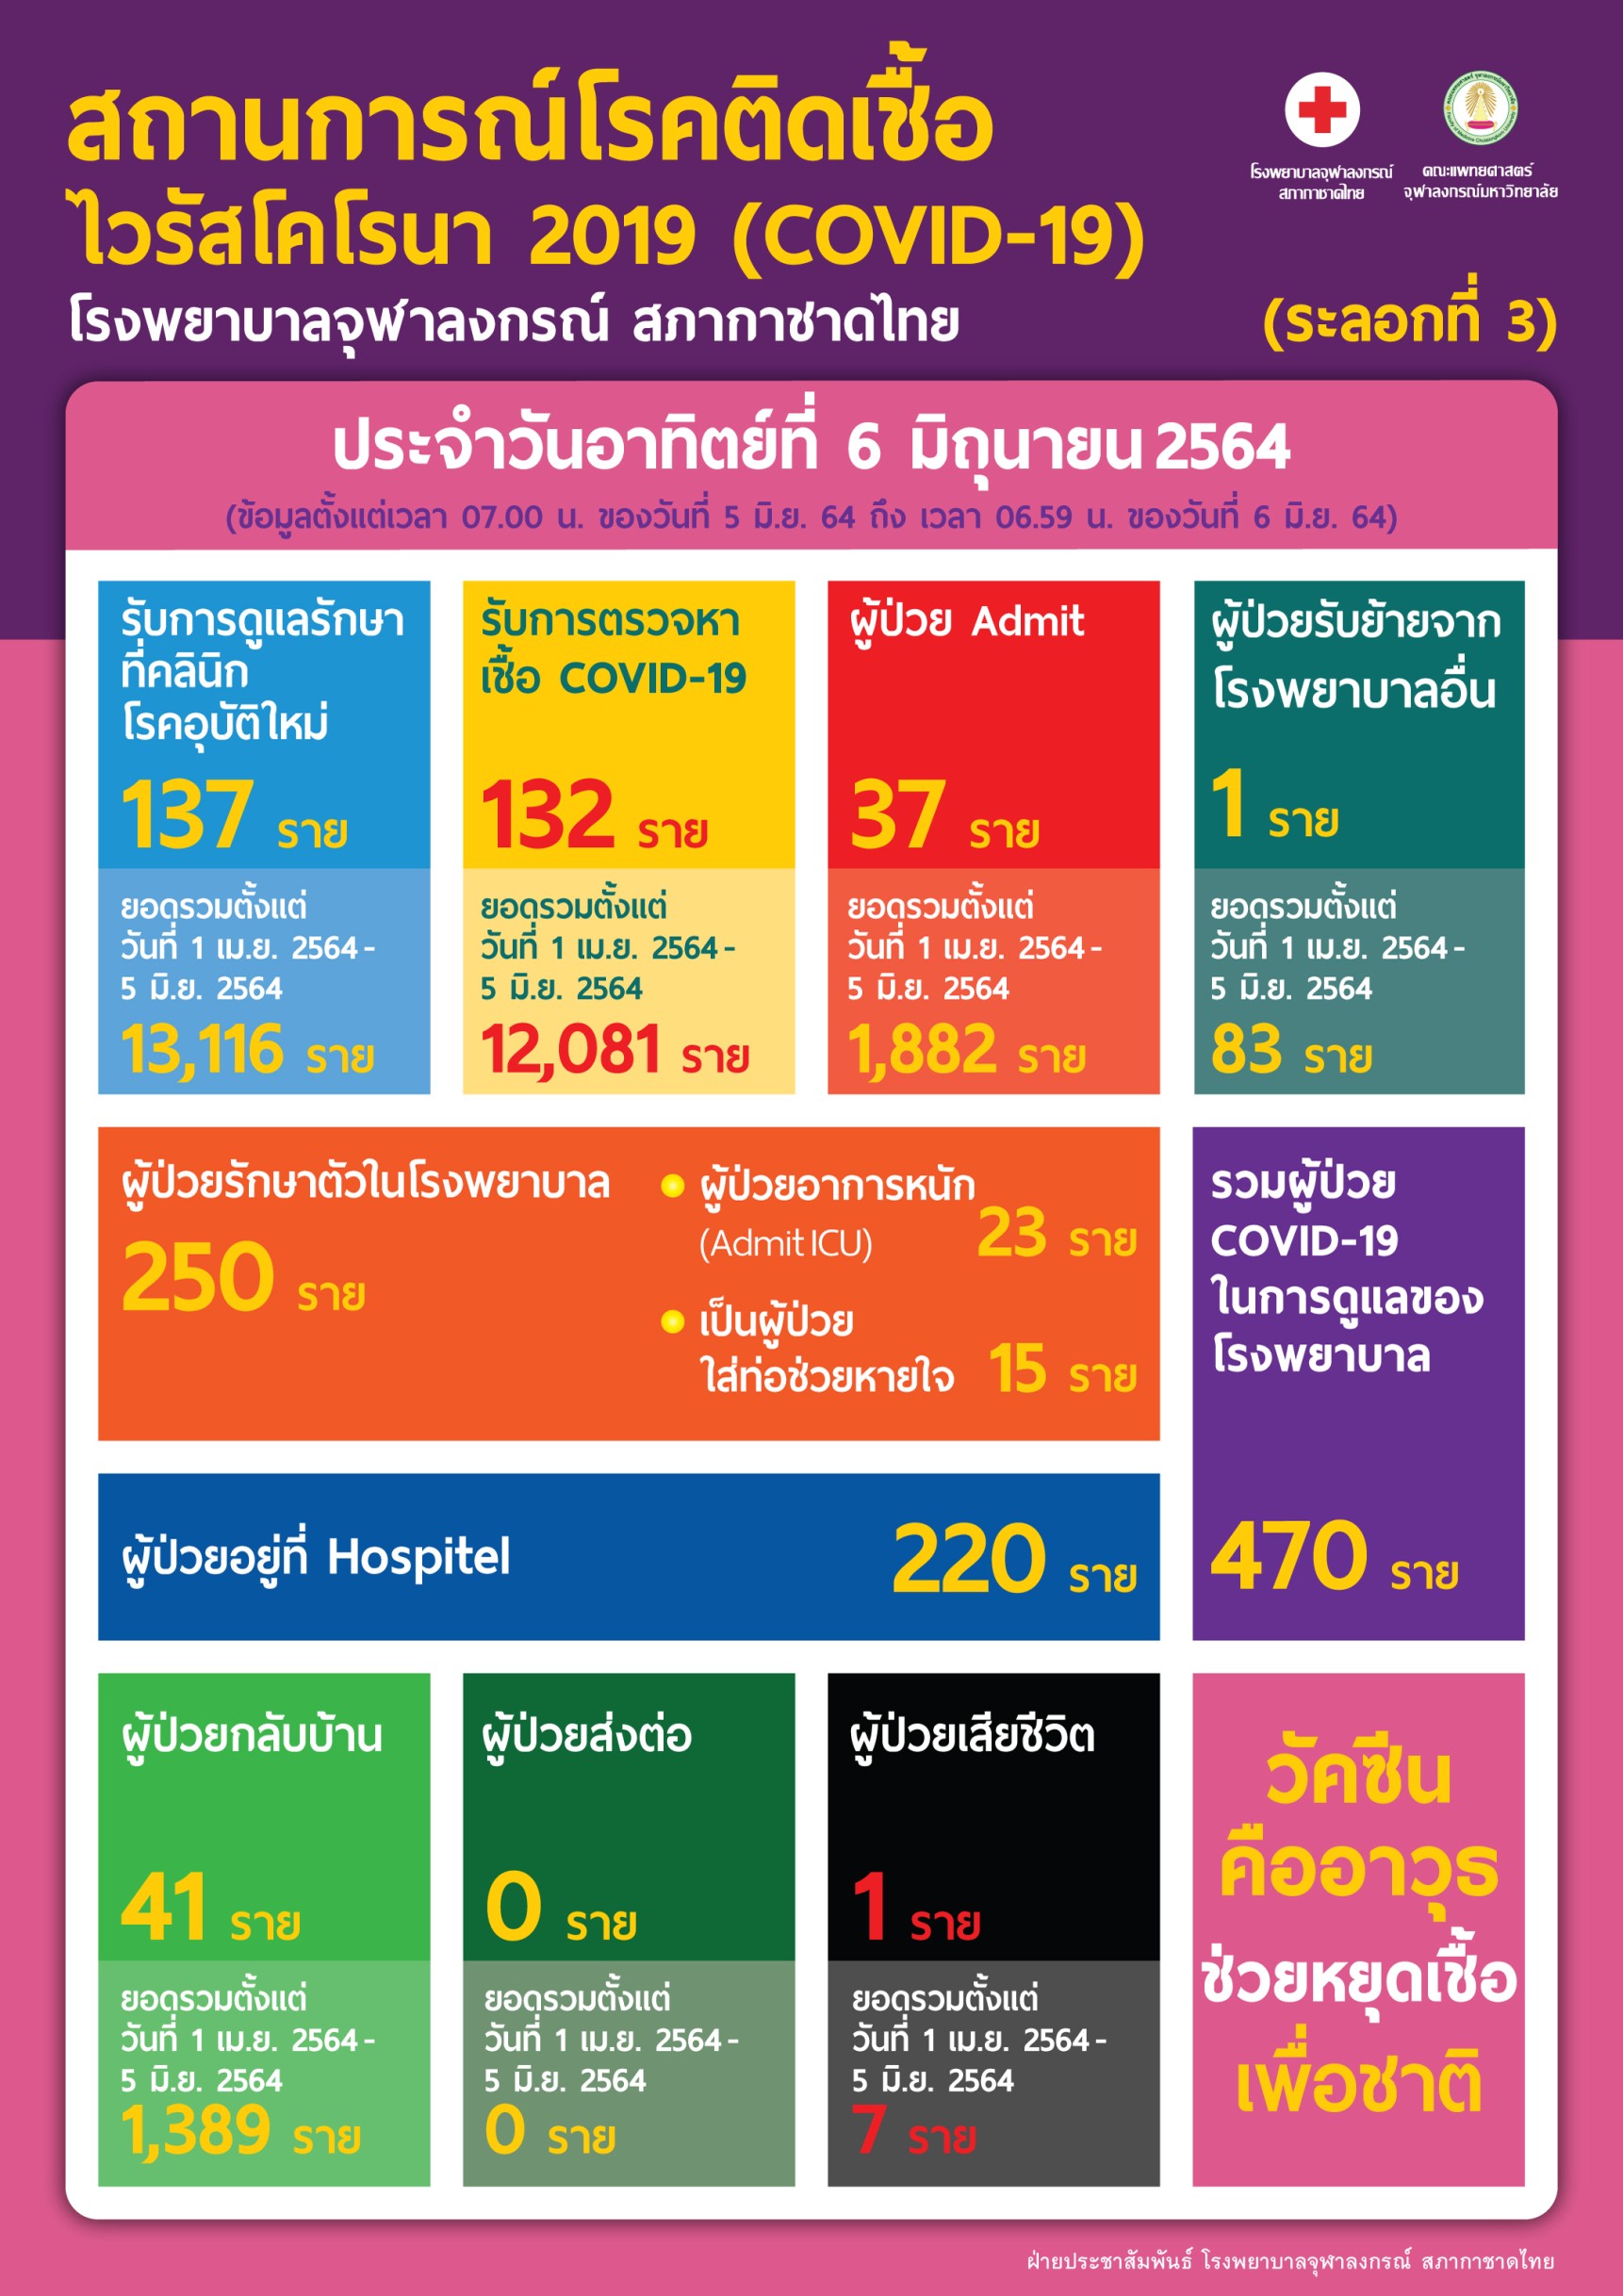 สถานการณ์โรคติดเชื้อ ไวรัสโคโรนา 2019 (COVID-19) (ระลอกที่ 3) โรงพยาบาลจุฬาลงกรณ์ สภากาชาดไทย ประจำวันอาทิตย์ที่ 6 มิถุนายน 2564